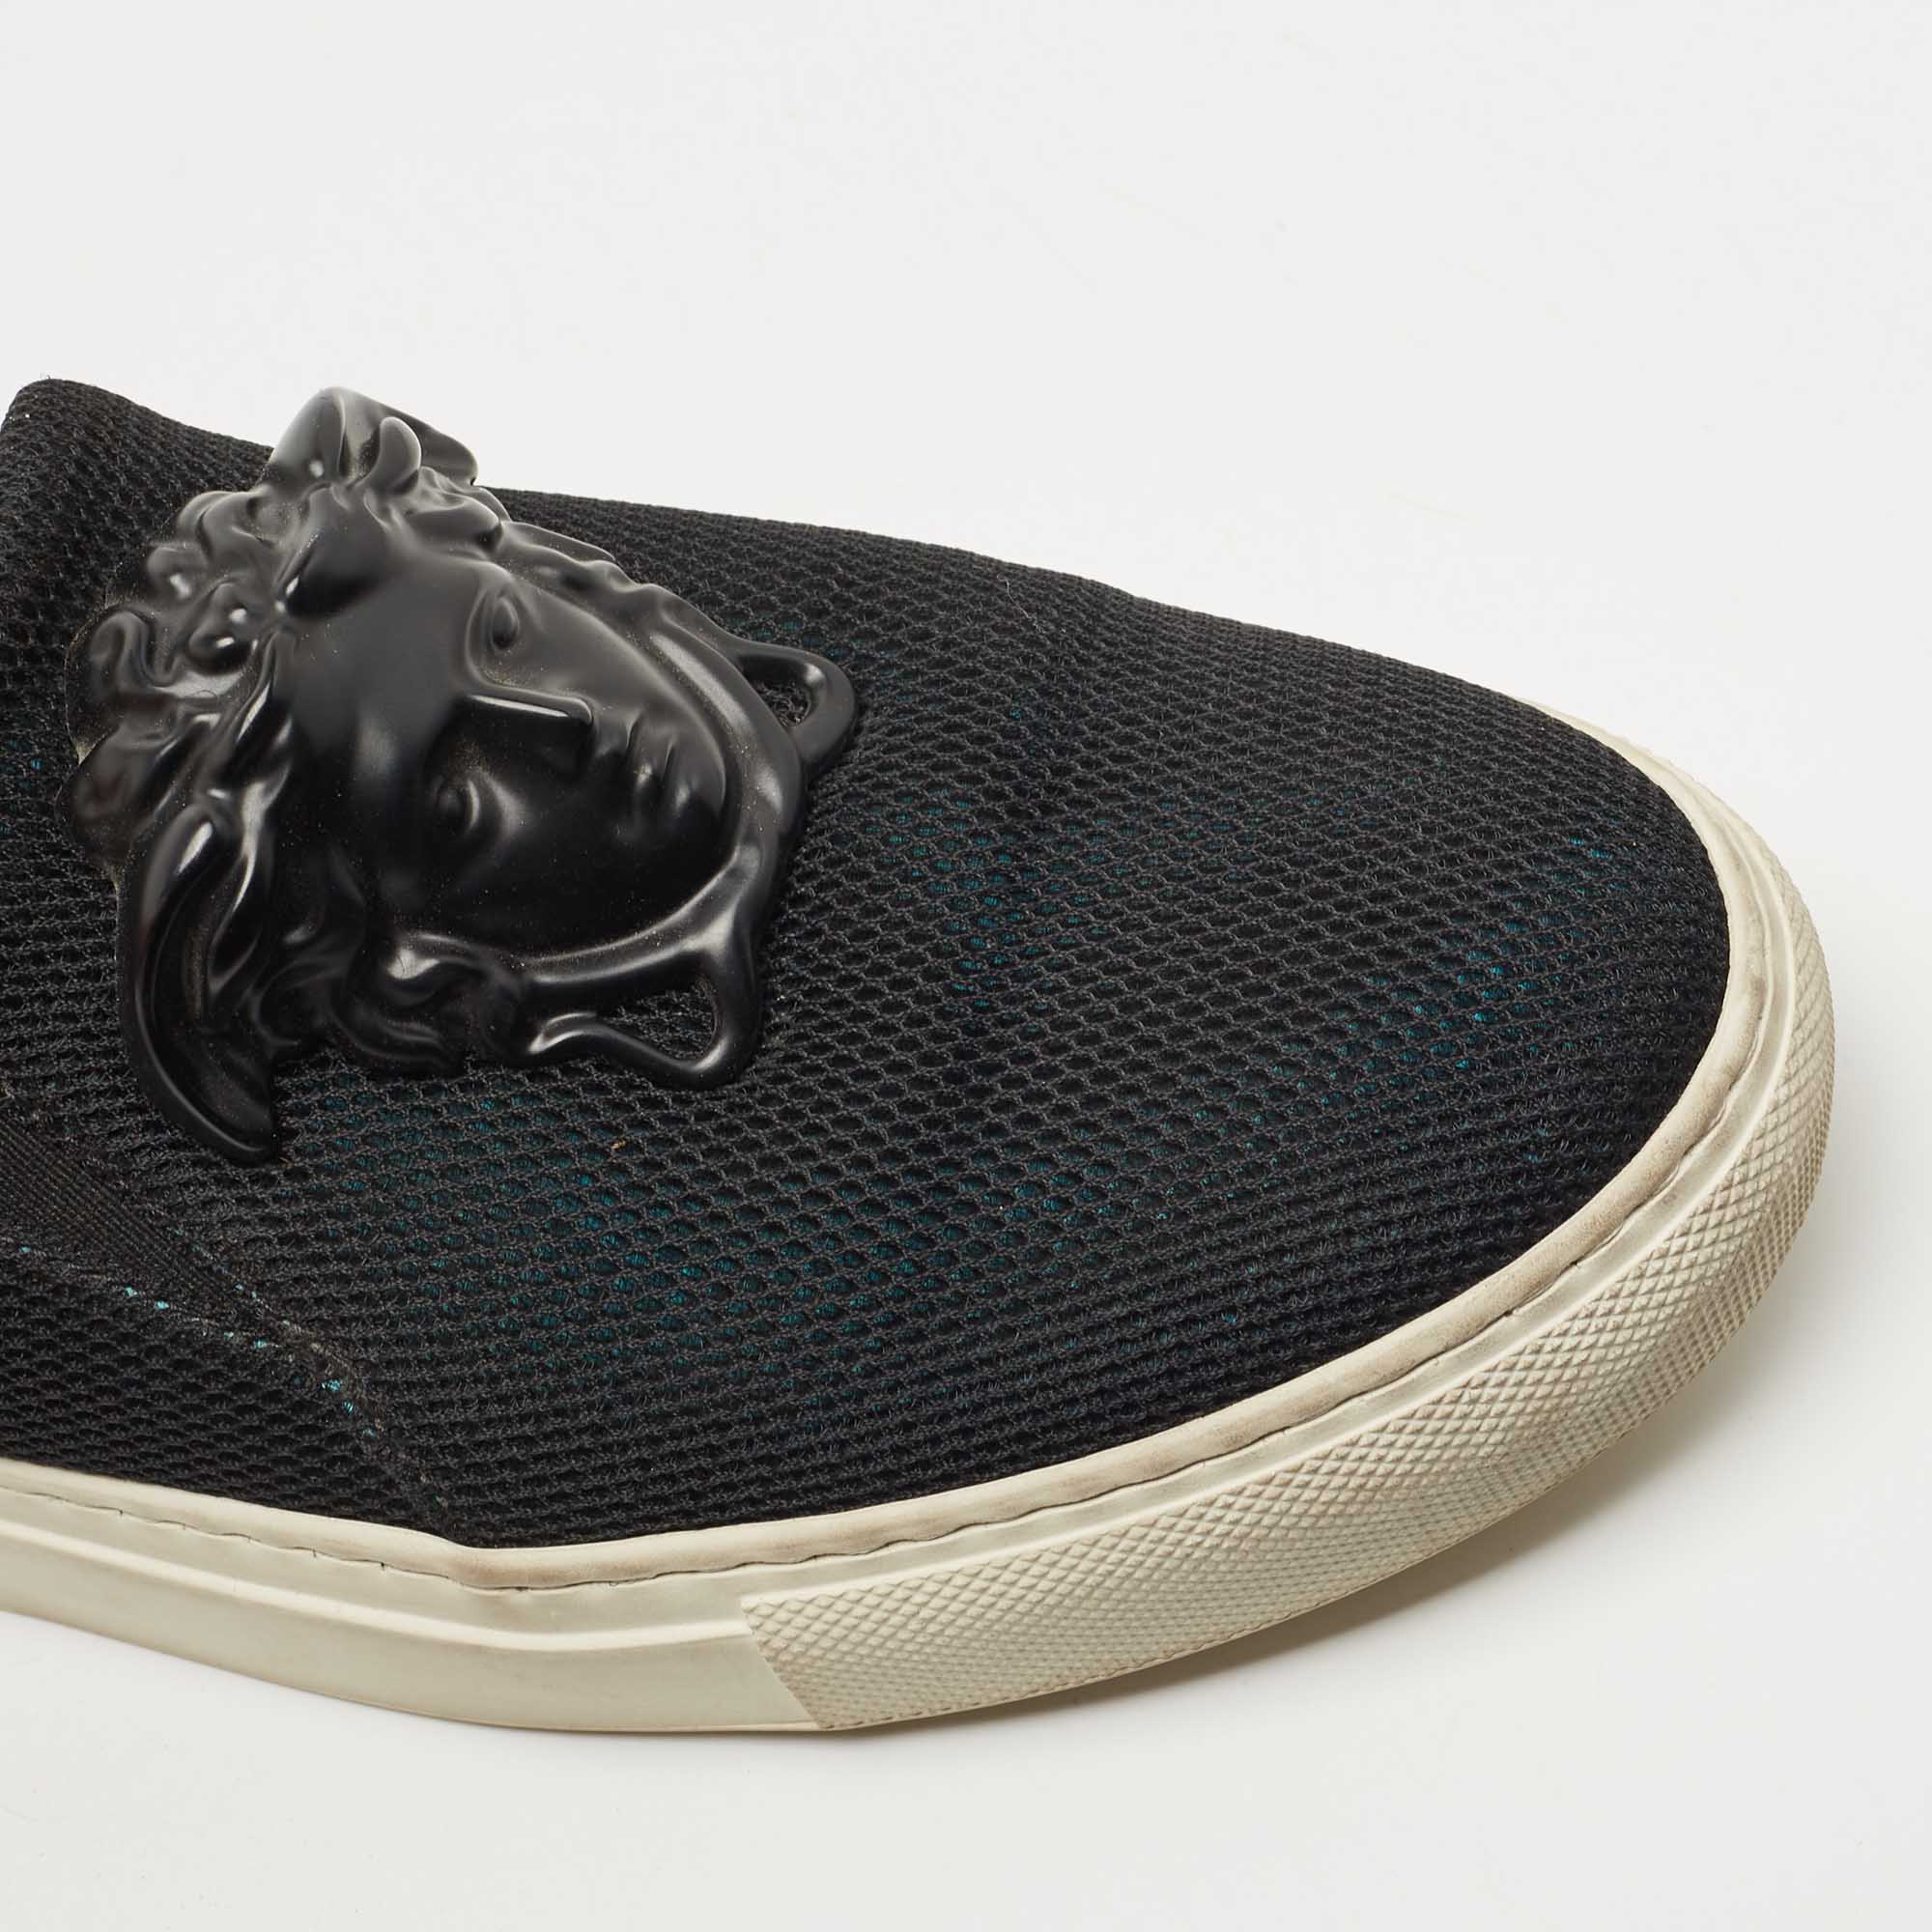 Versace Black Mesh Medusa Slip On Sneakers Size 37.5